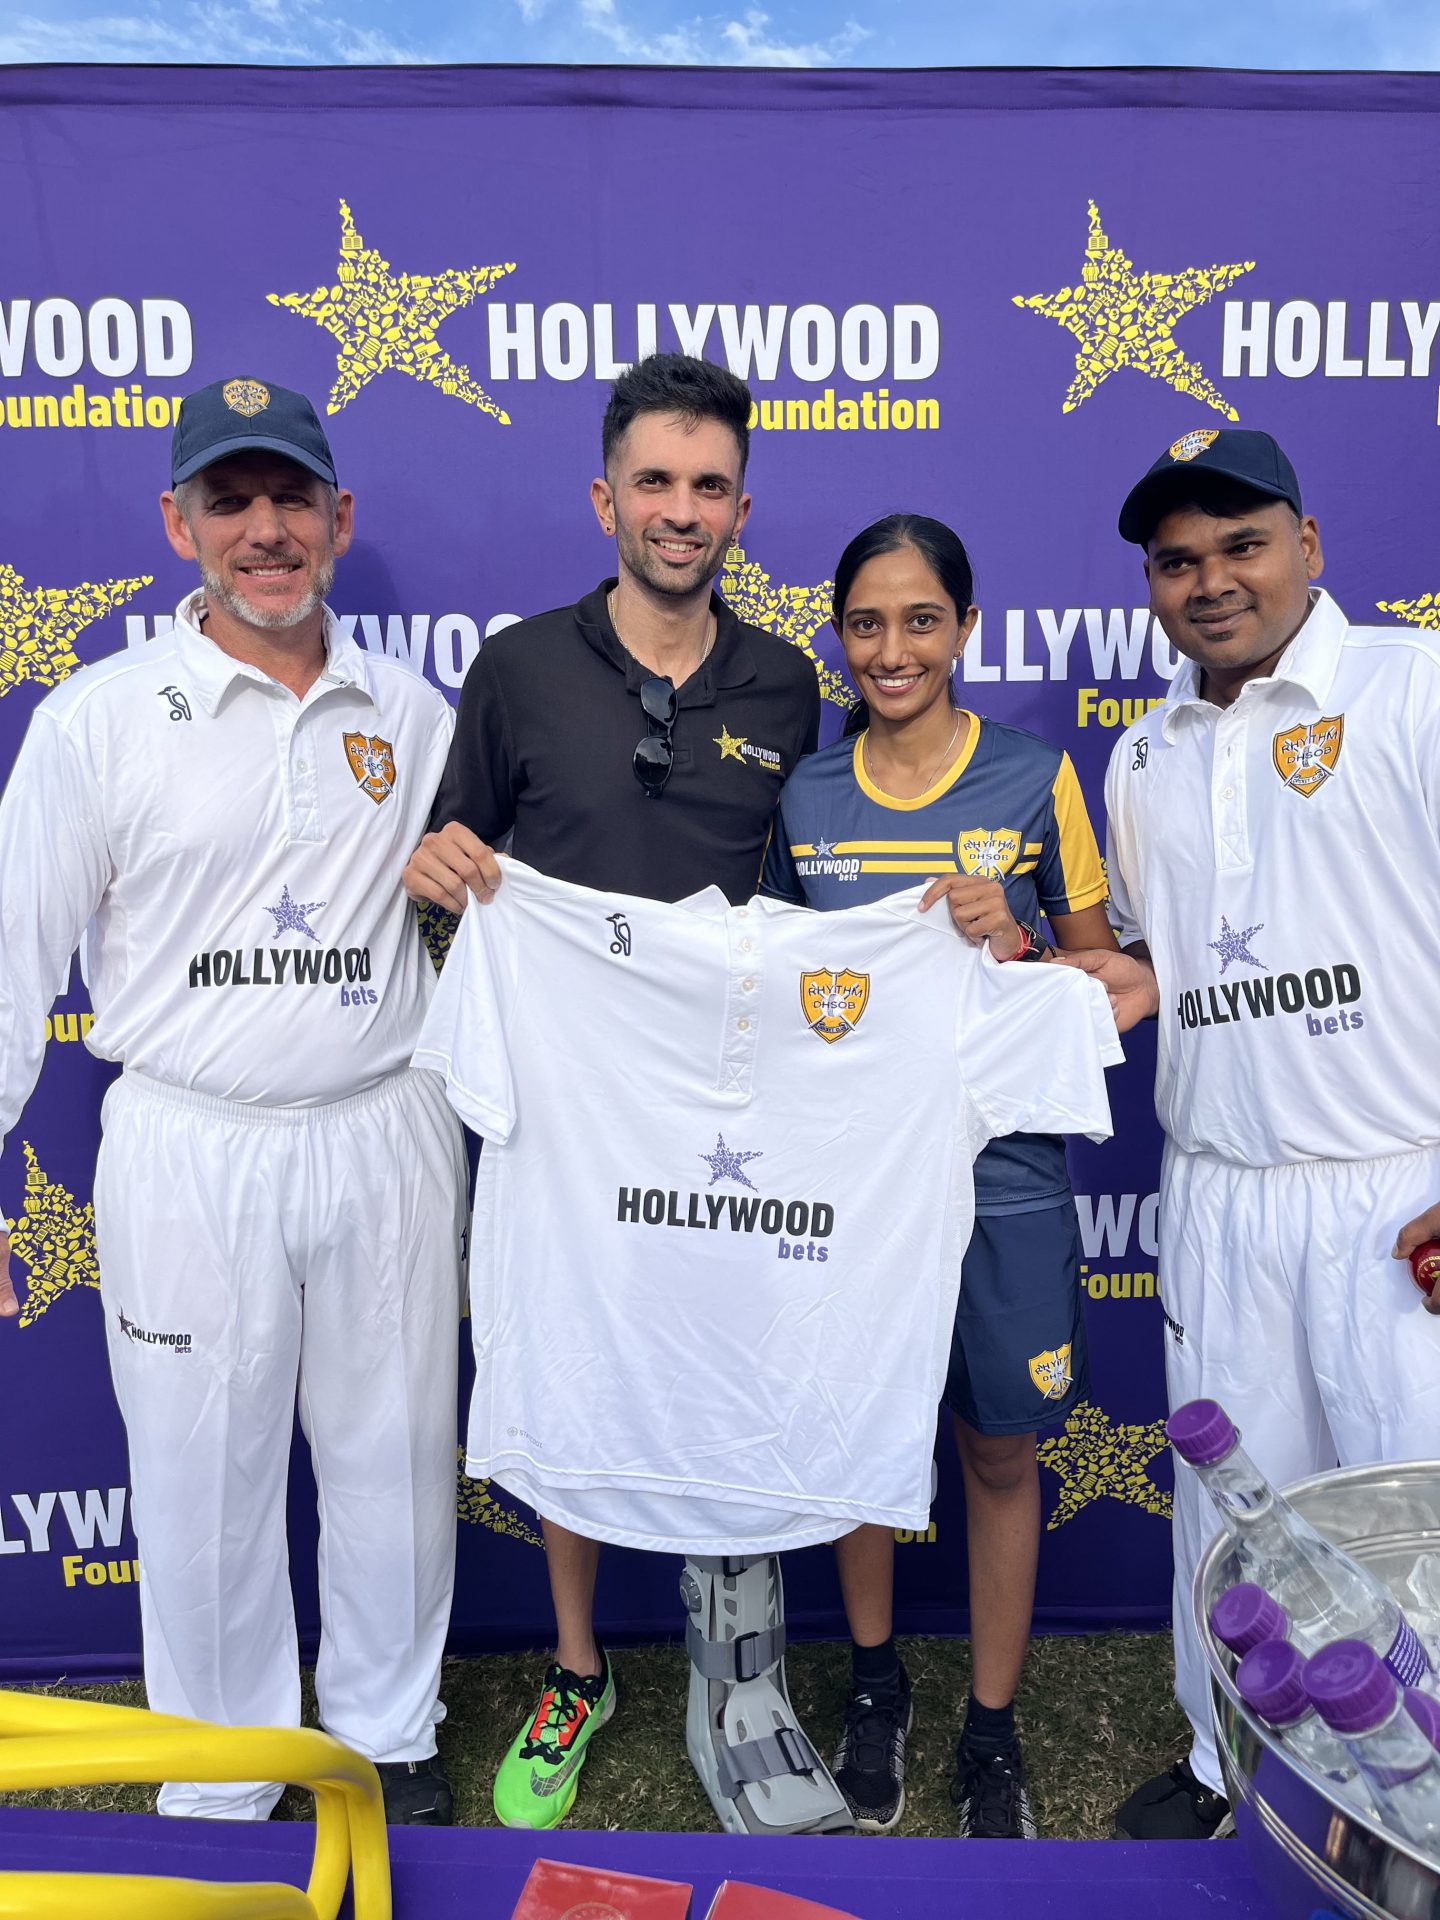 DHS RHYTHM Cricket Club Receives Sponsorship Hollywood Foundation